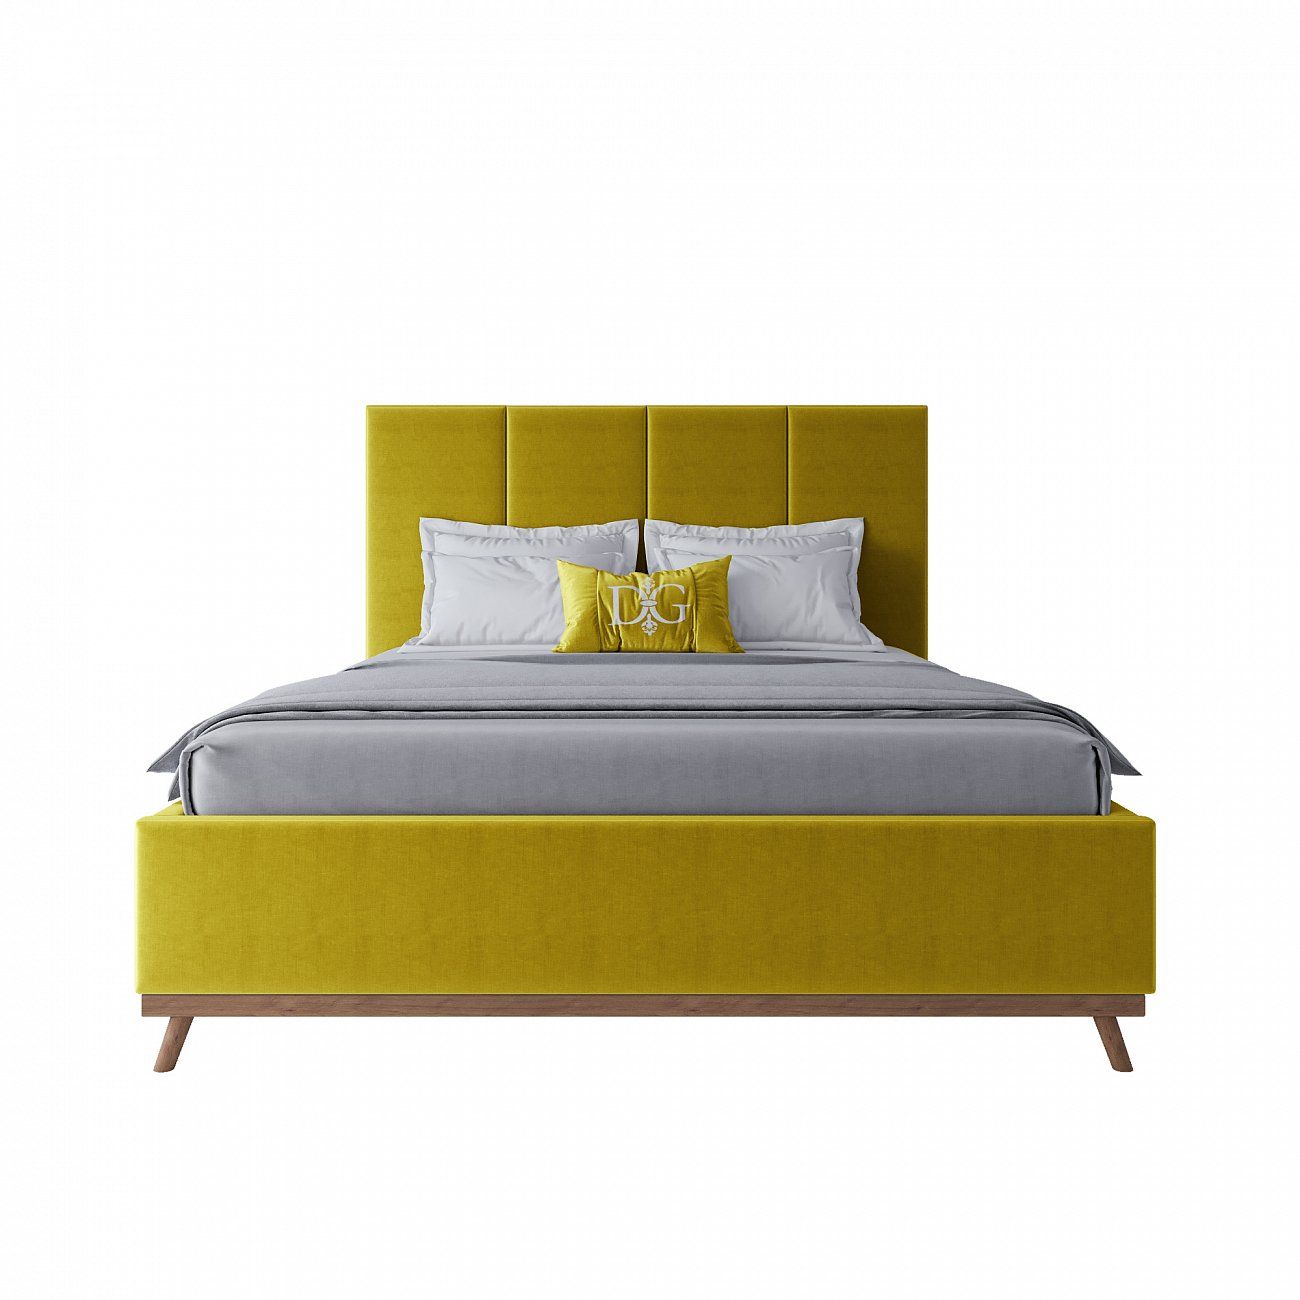 Кровать двуспальная 180х200 желтая Carter Gold